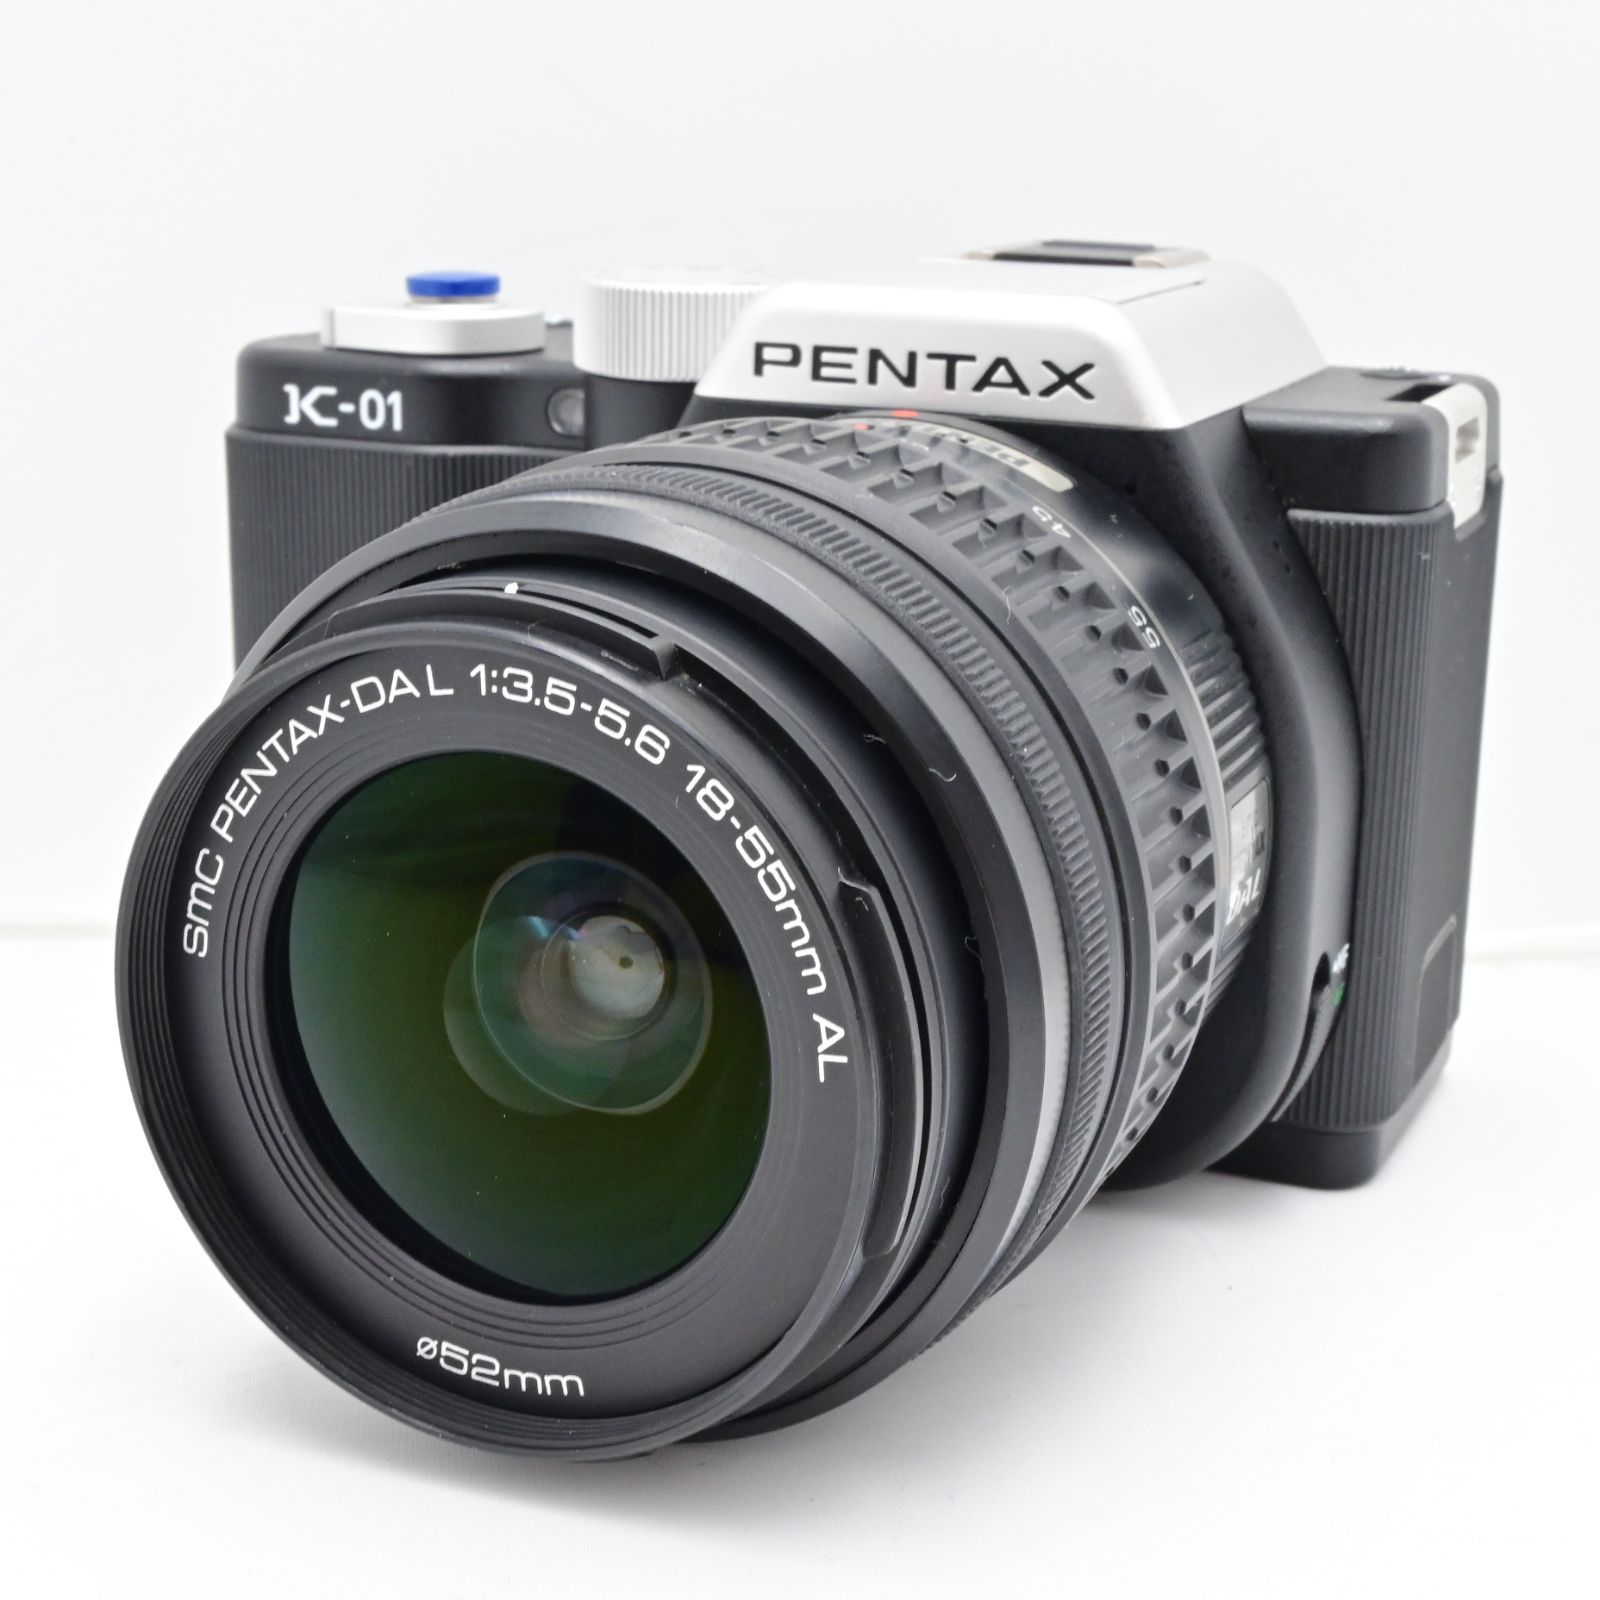 PENTAX ミラーレス一眼カメラ K-01ダブルズームレンズキット ブラック